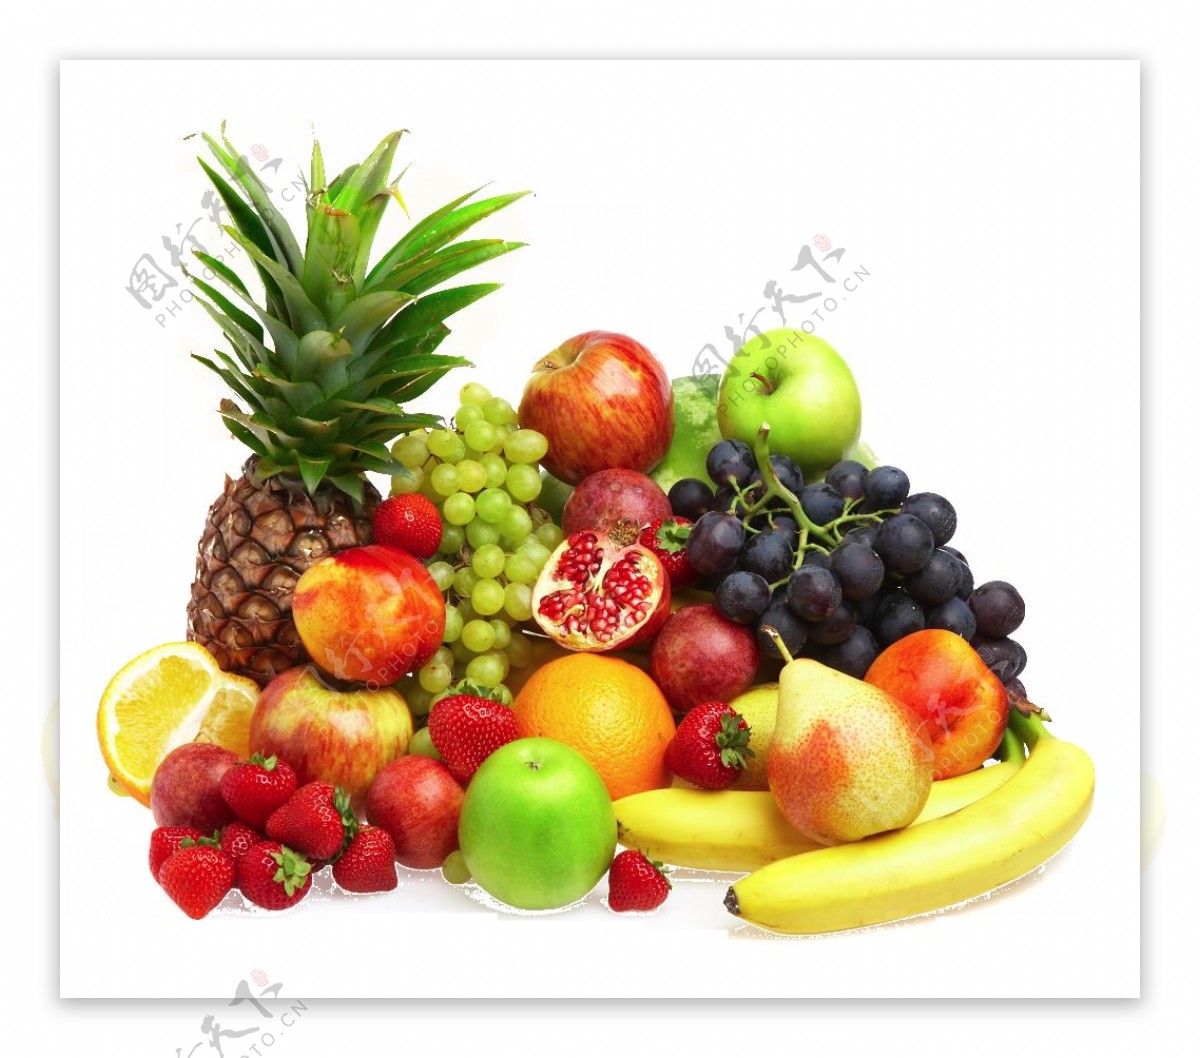 常见水果名称大全（42个科154种水果别说吃过你见过多少） – 碳资讯